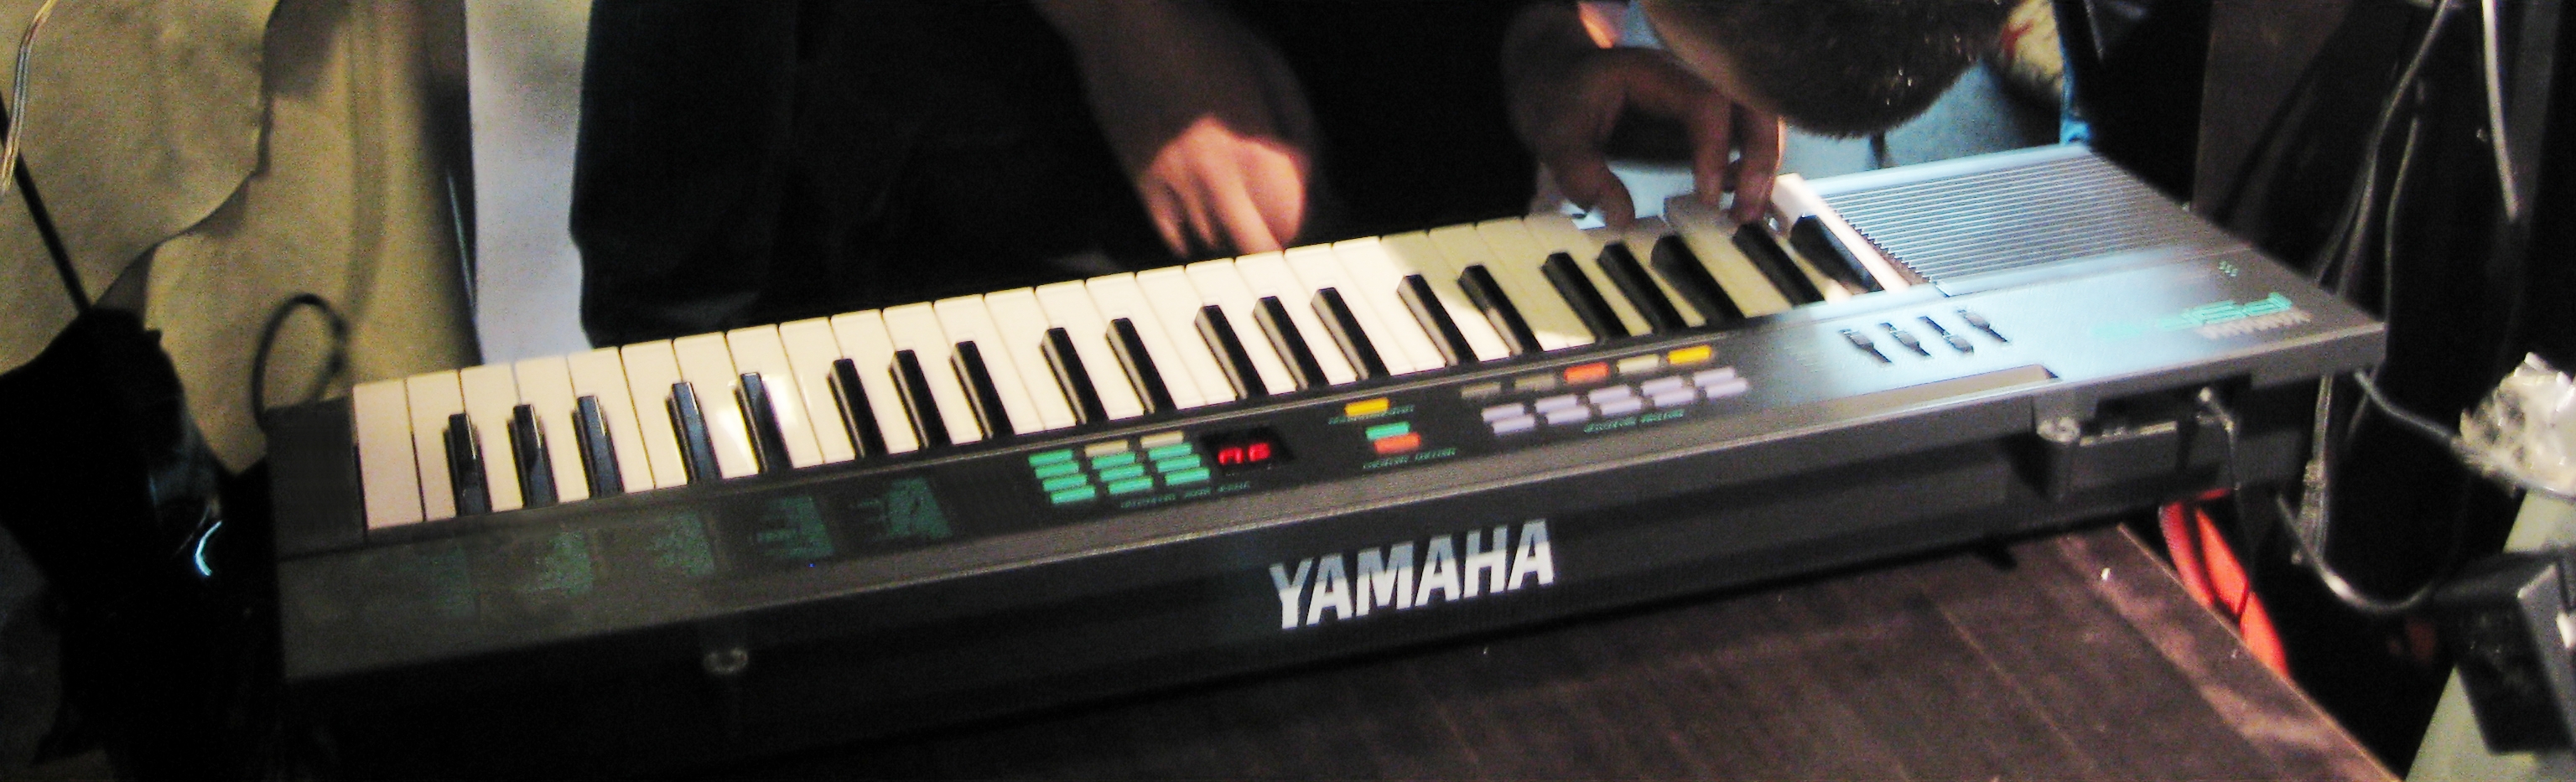 yamaha psr 6 keyboard manual